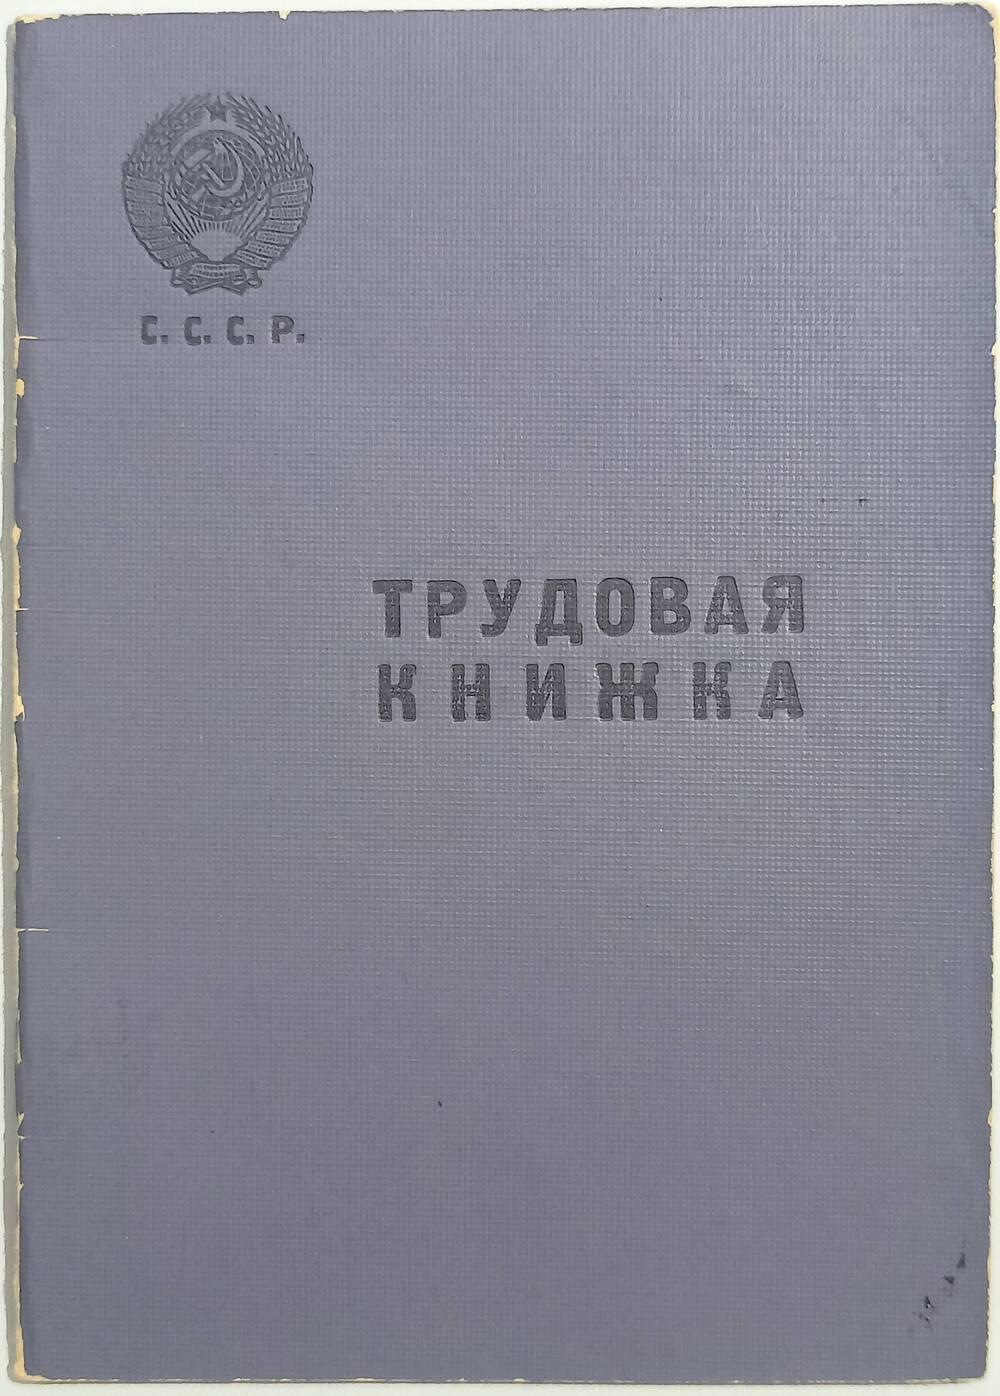 Трудовая книжка Фомченко Я.А. 23 июля 1957 г.